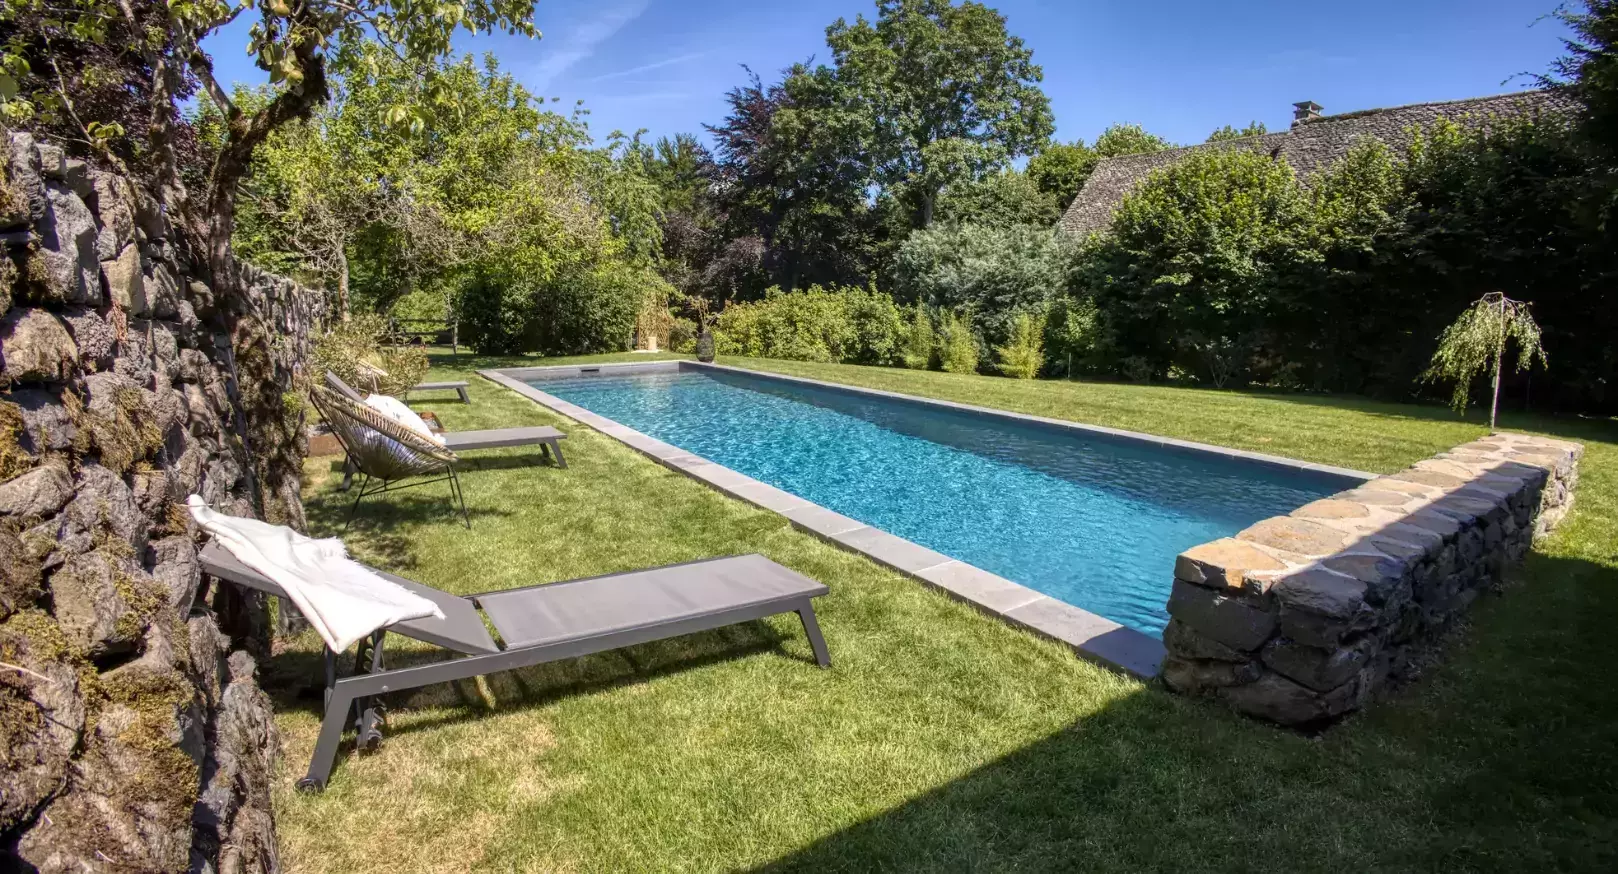 Développement d'un passage de natation dans un jardin de maison, situé dans un village français de grande beauté.